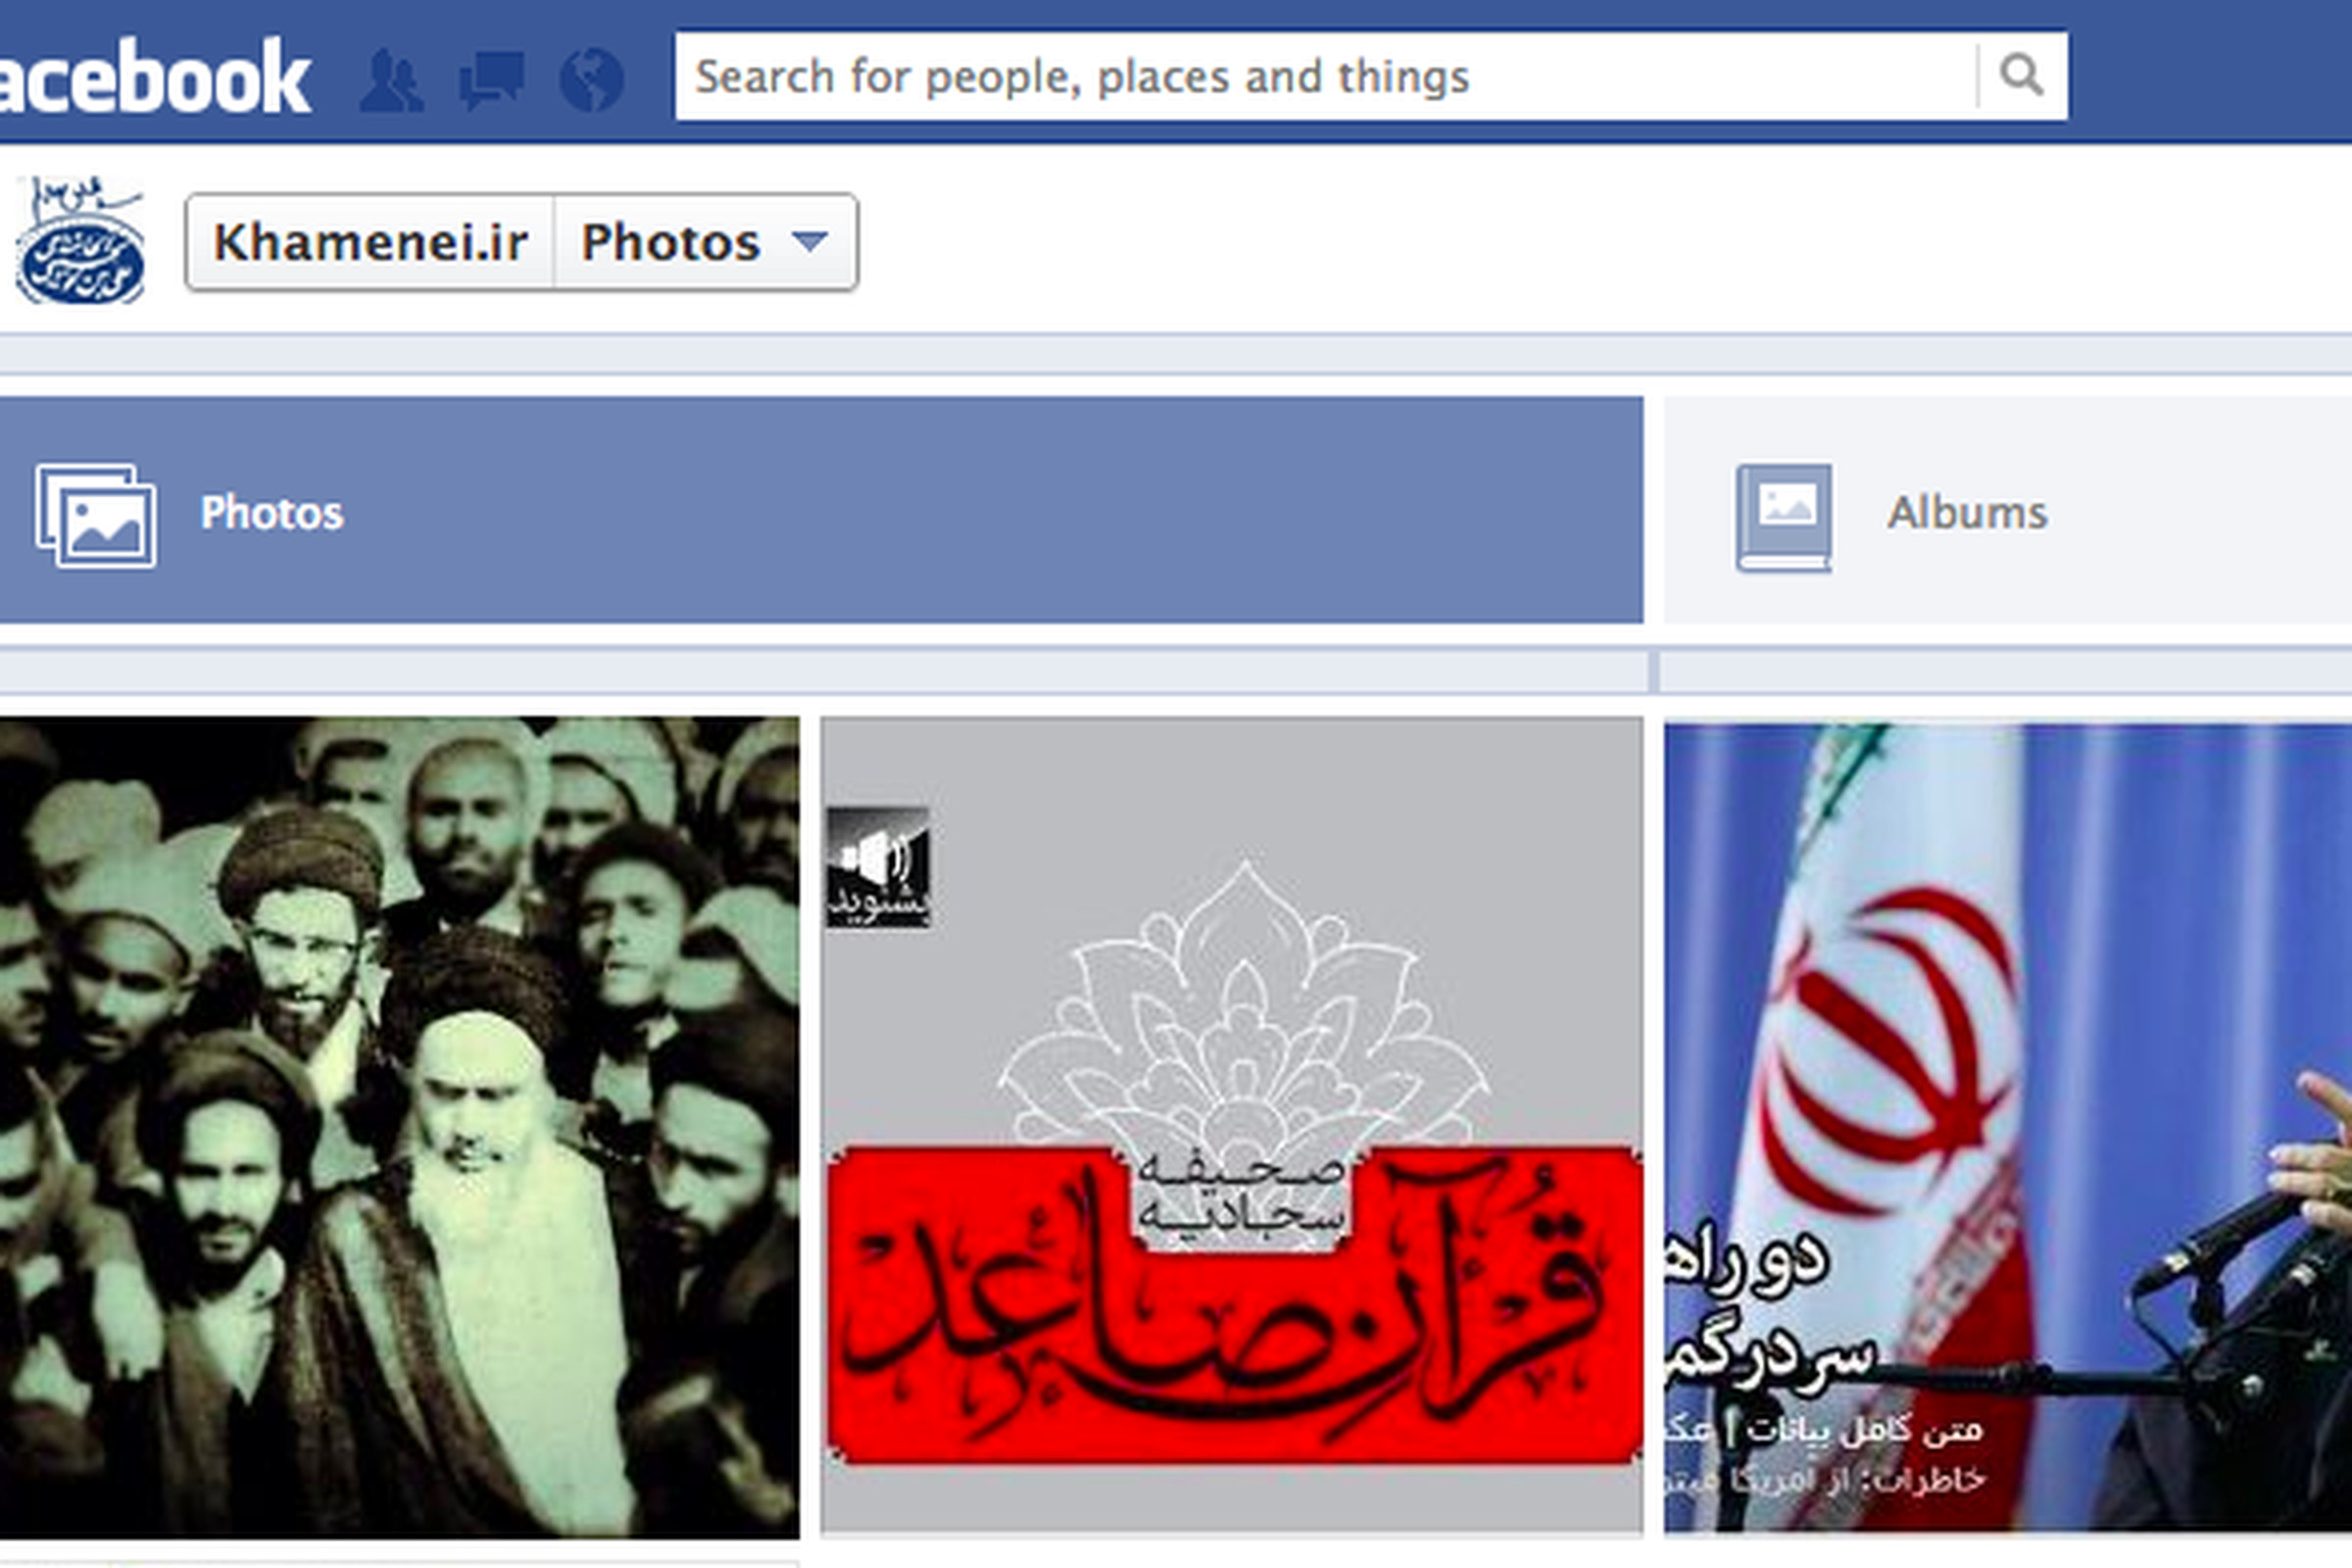 Khamenei.ir Facebook